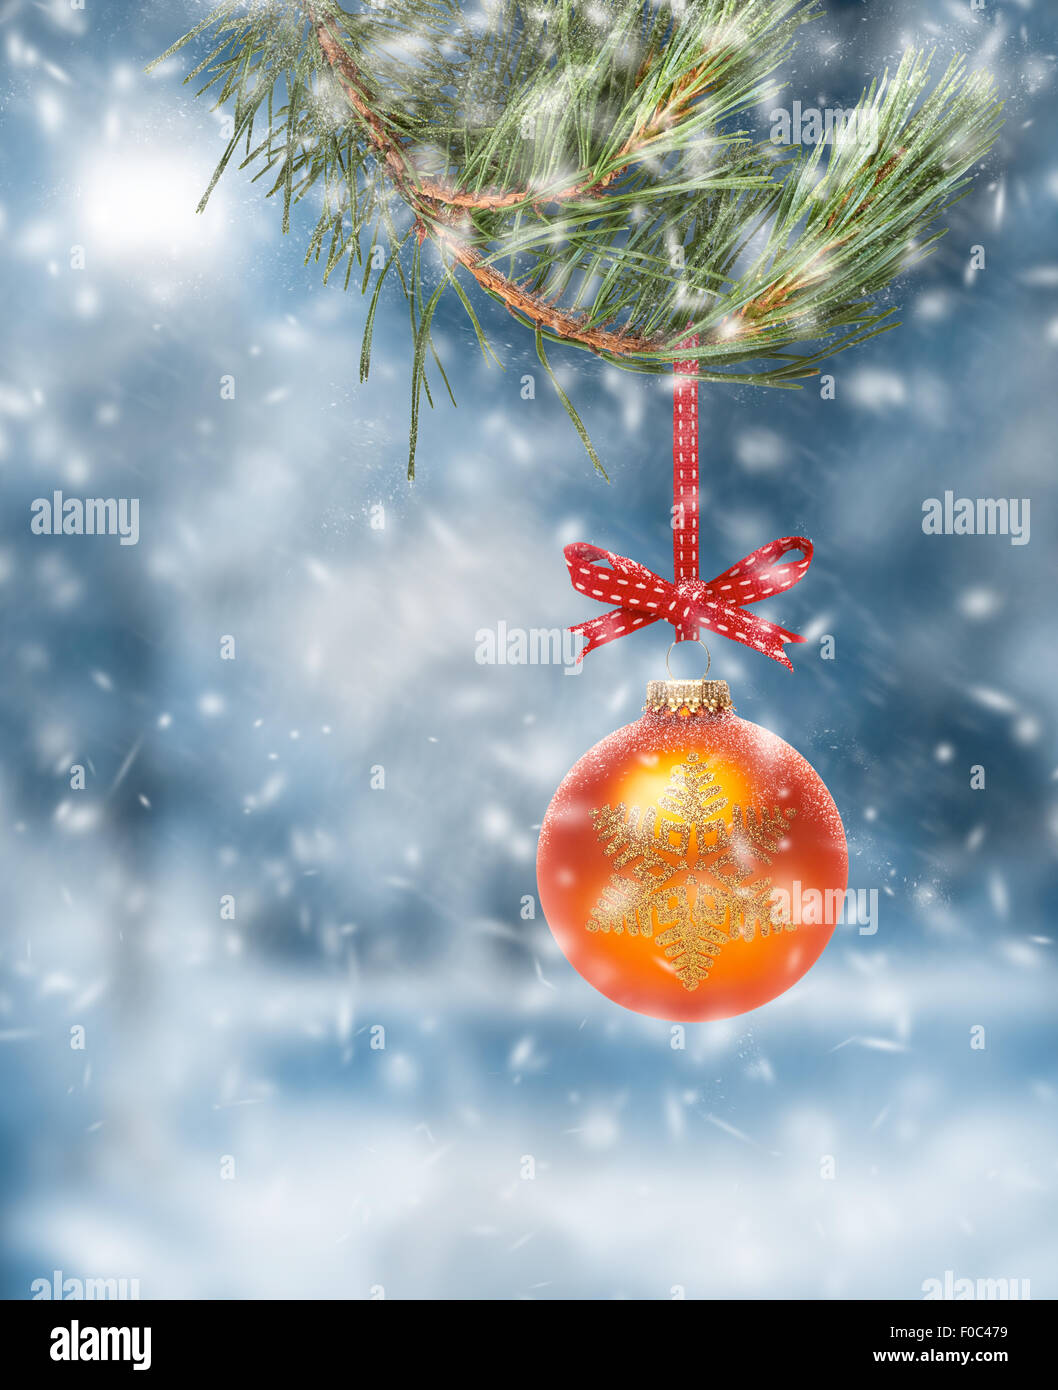 Décoration d'arbre de Noël traditionnel suspendu à une branche d'arbre avec une scène de la neige fond. Banque D'Images